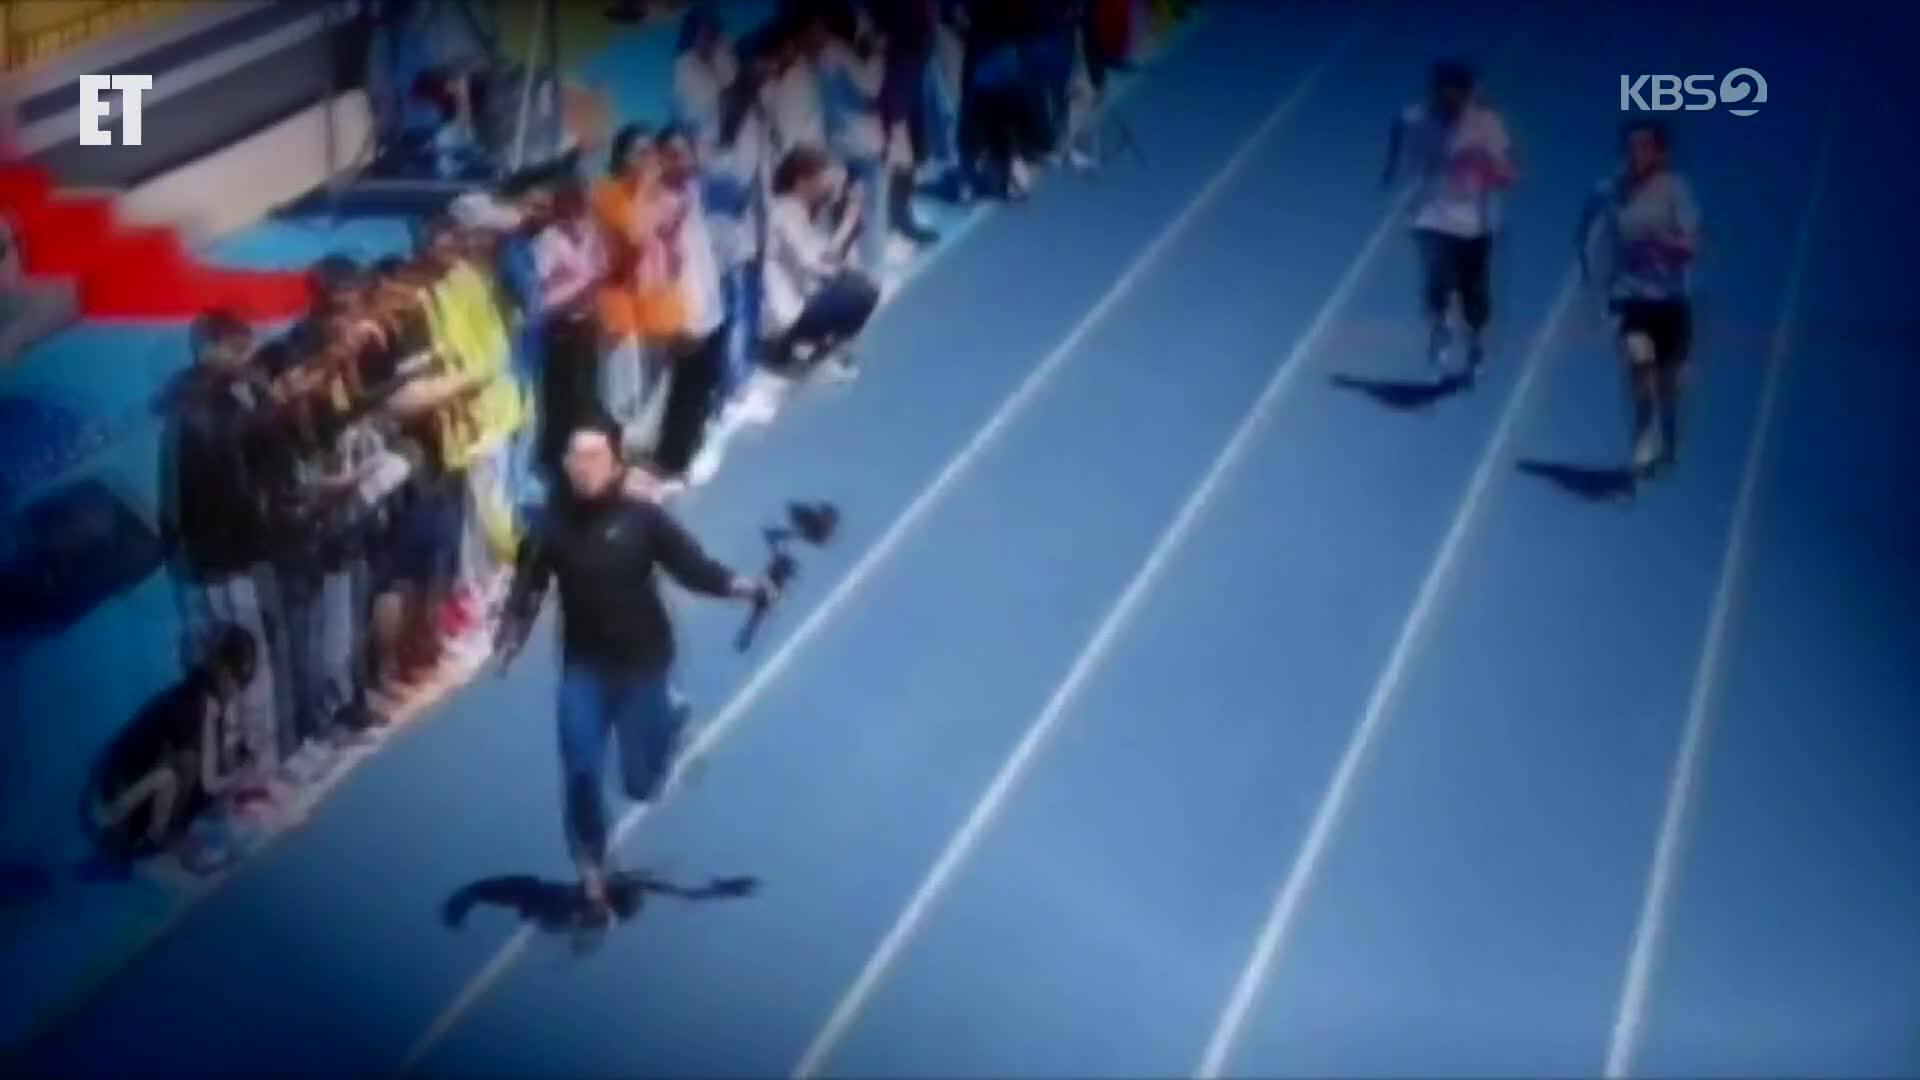 [ET] “누가 선수야?” 육상 선수보다 빠른 카메라맨?